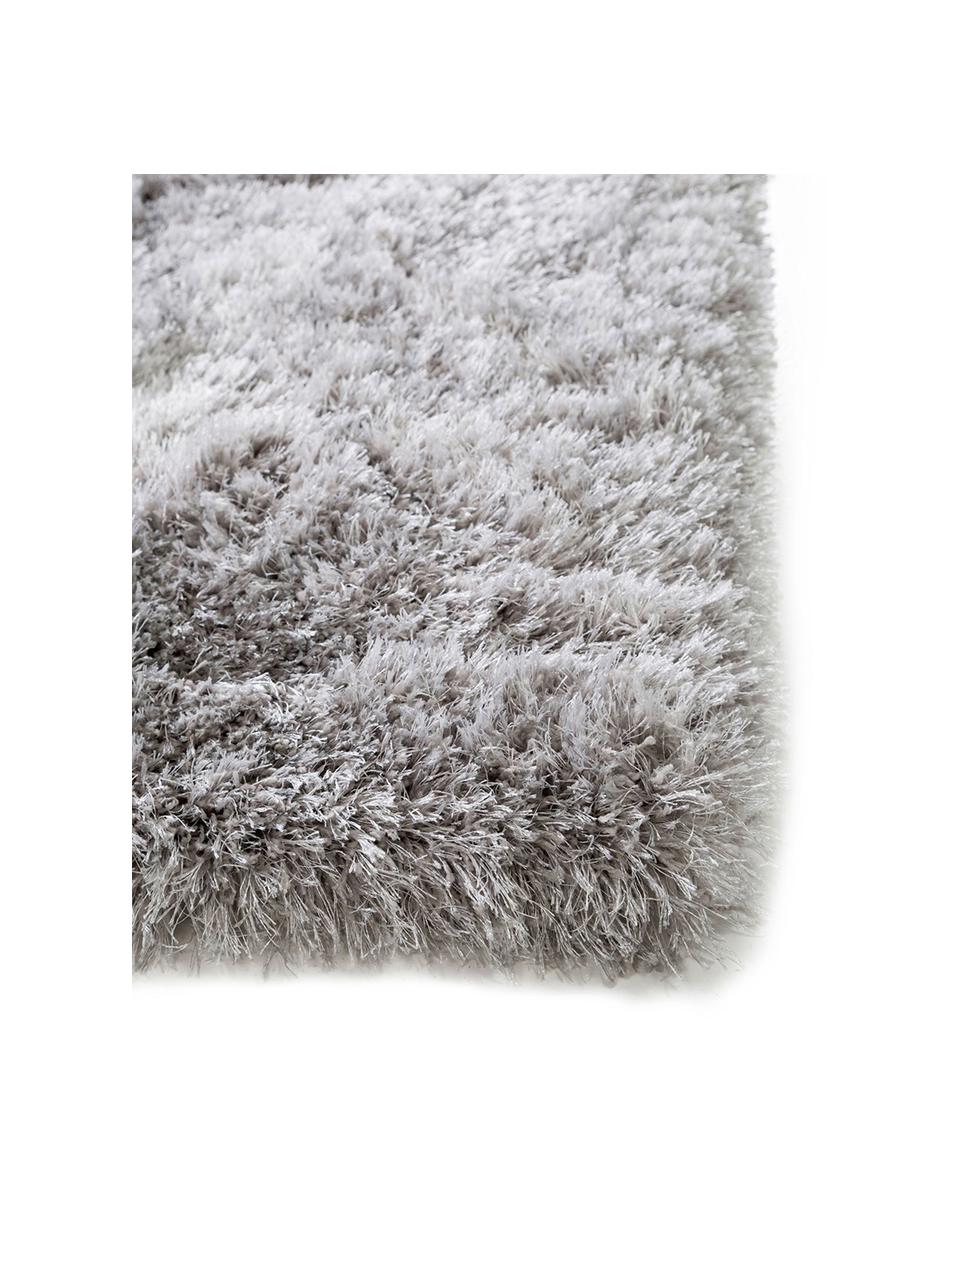 Glänzender Hochflor-Teppich Lea in Hellgrau, Flor: 50% Polyester, 50% Polypr, Grau, B 300 x L 400 cm (Größe XL)